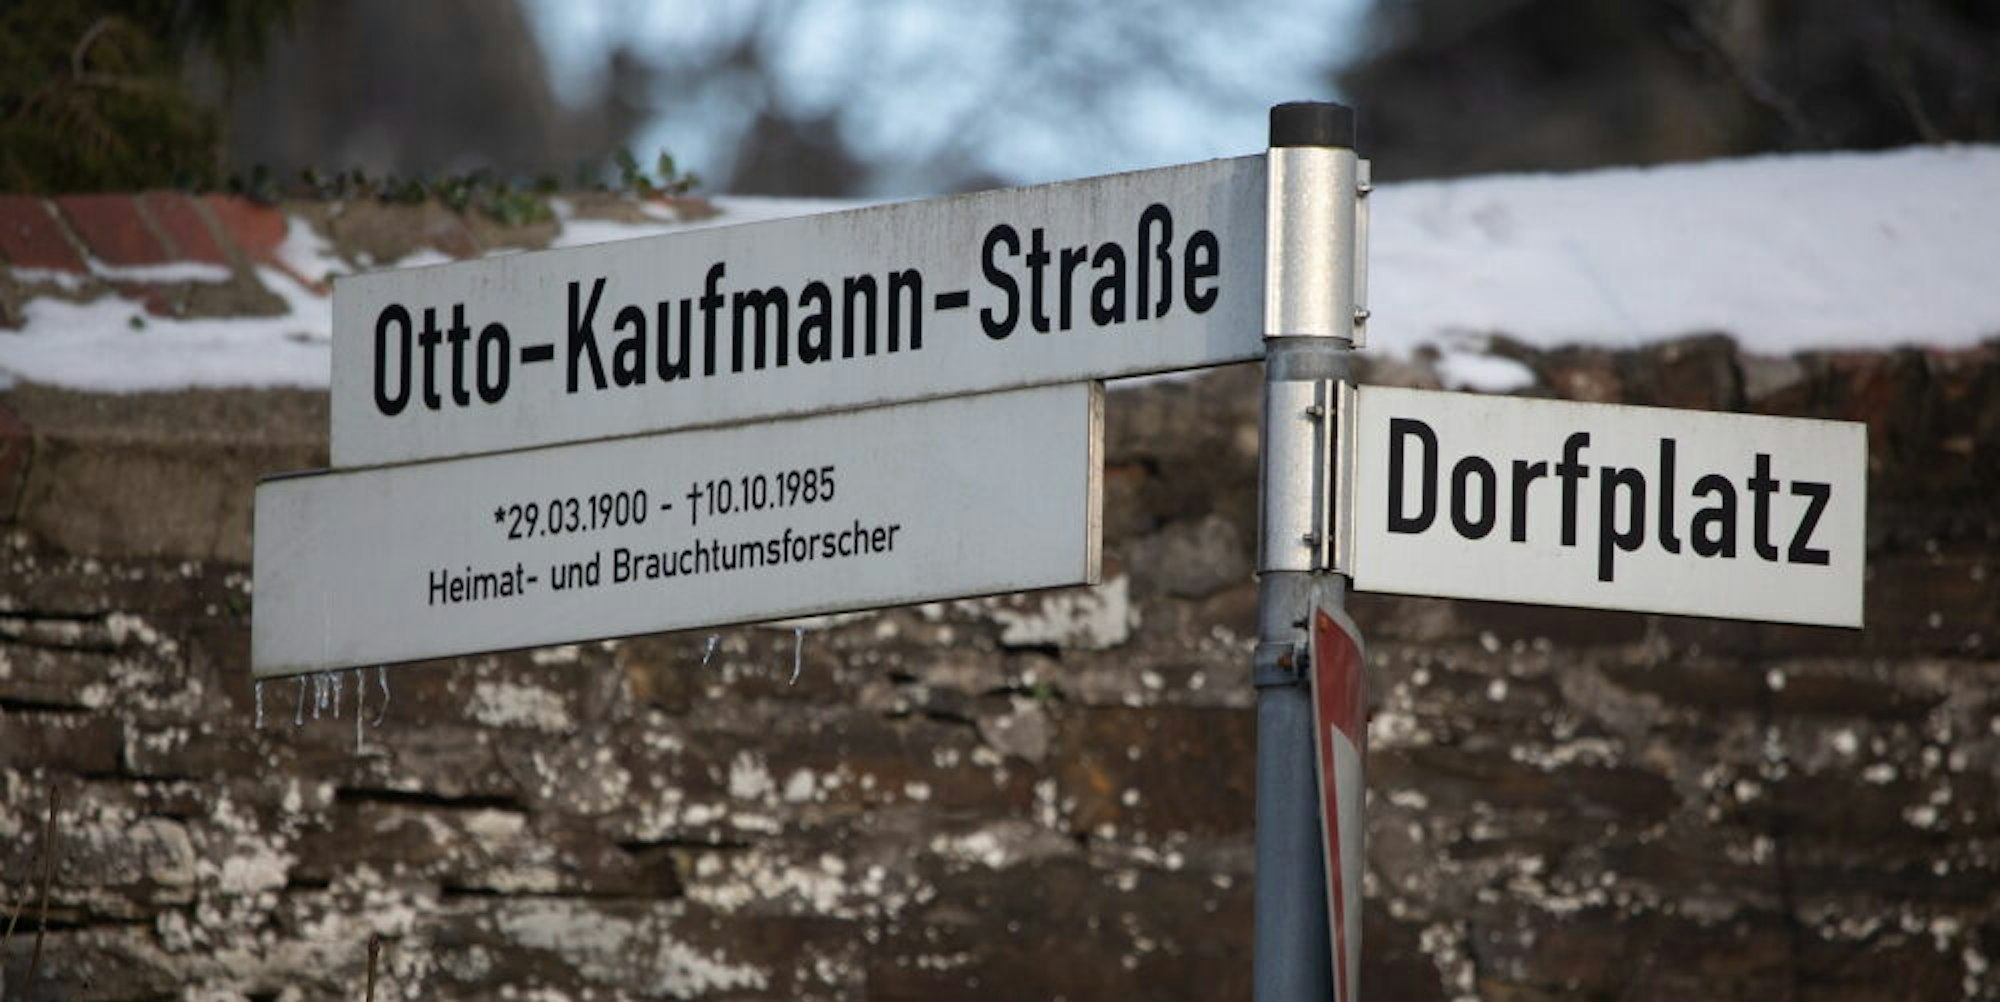 Die Umbenennung der Otto-Kaufmann-Straße hat der Nümbrechter Rat beschlossen, die Diskussion um seine Person hält an.